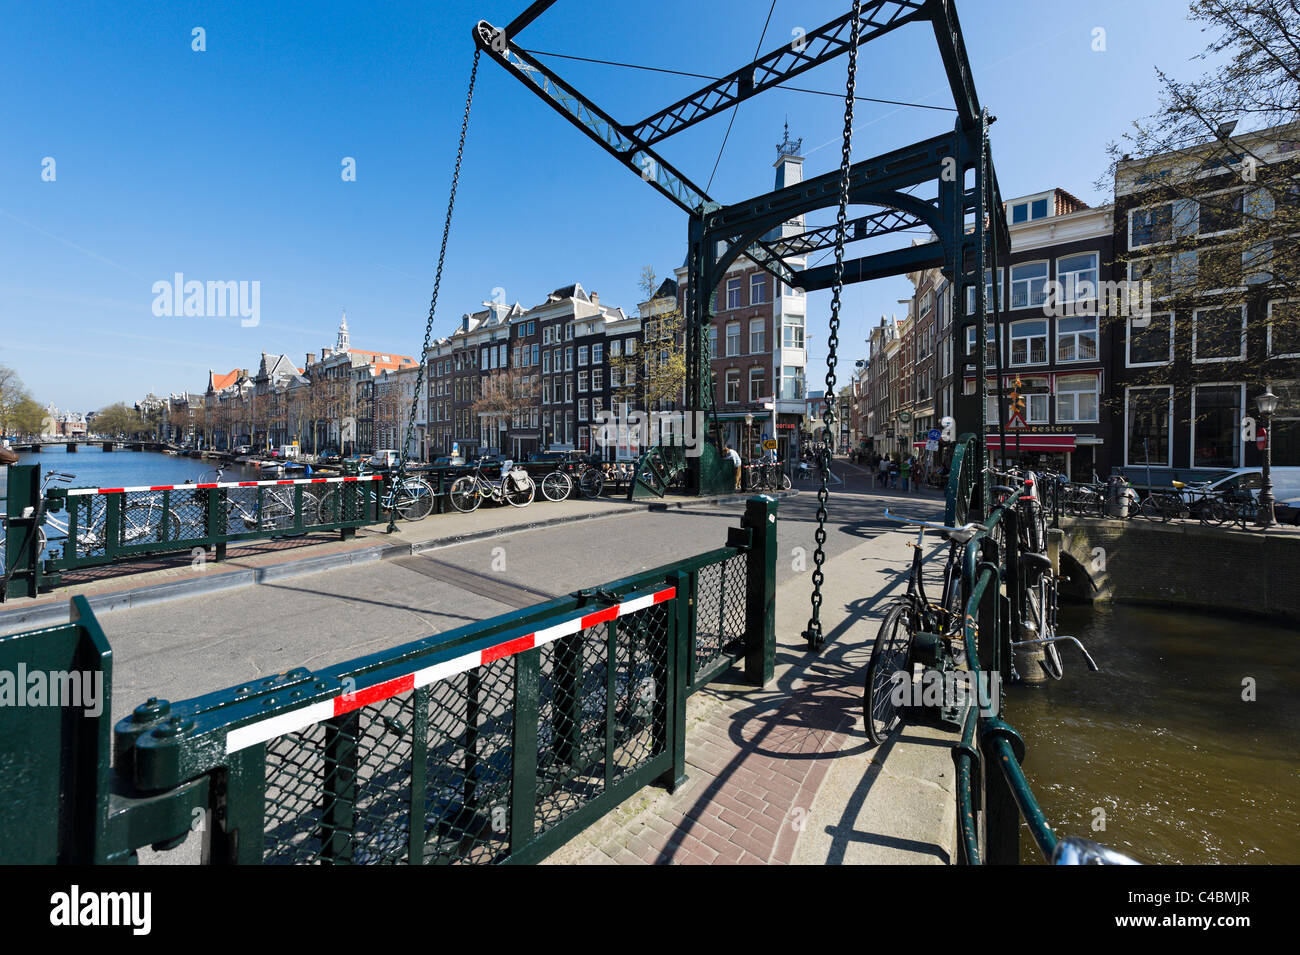 Pont sur le canal Kloveniersburgwal à la fin de Febo dans le centre-ville, Amsterdam, Pays-Bas Banque D'Images